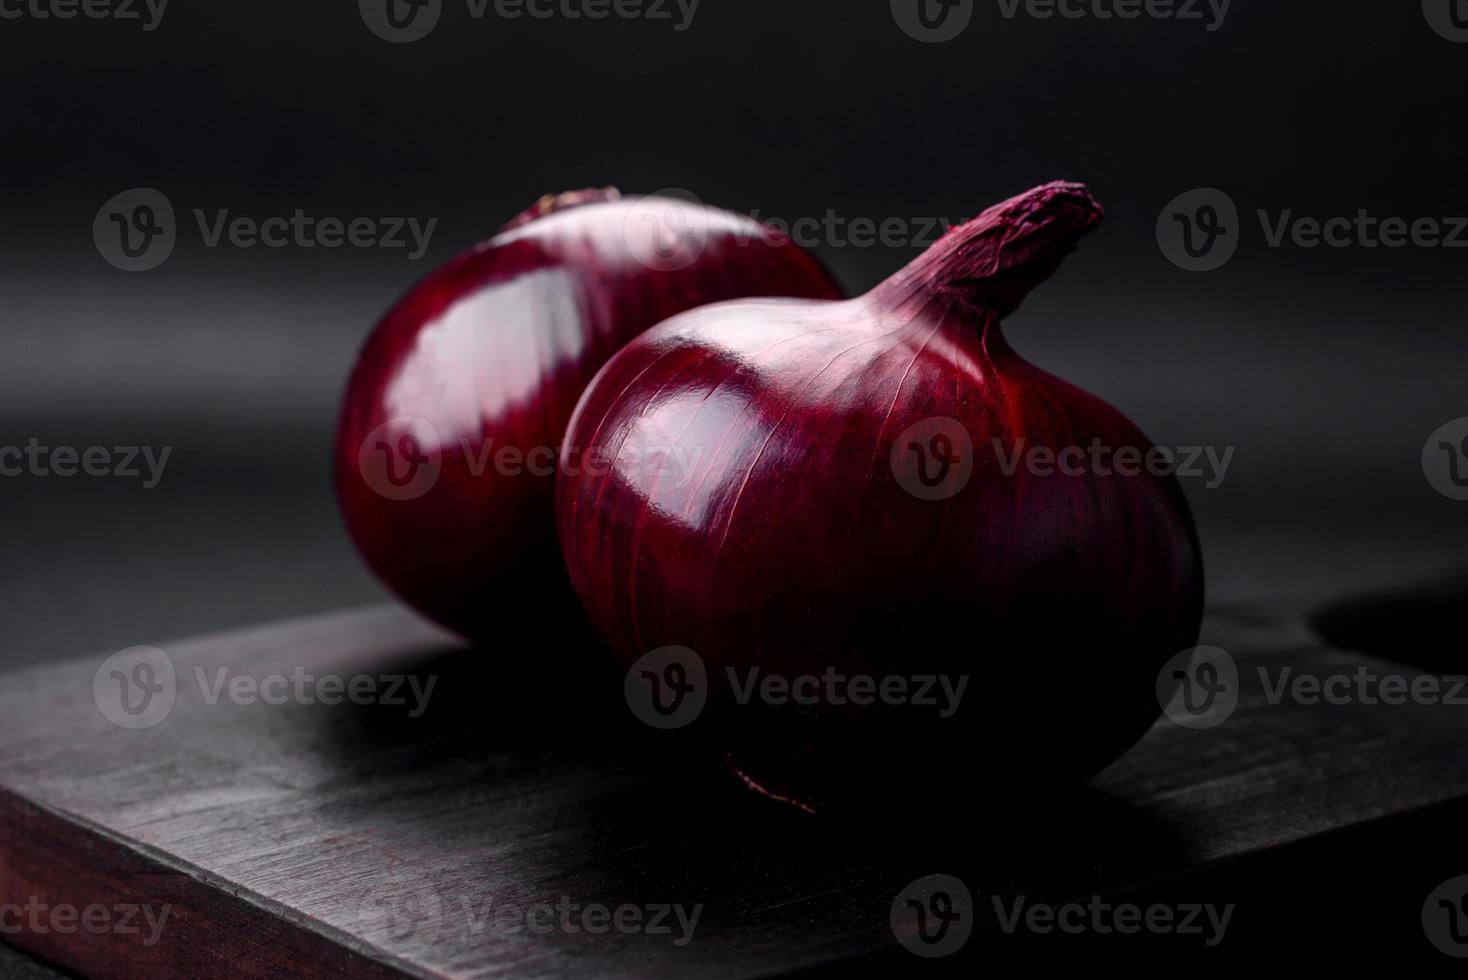 Fresh raw red onion on dark textured concrete background photo